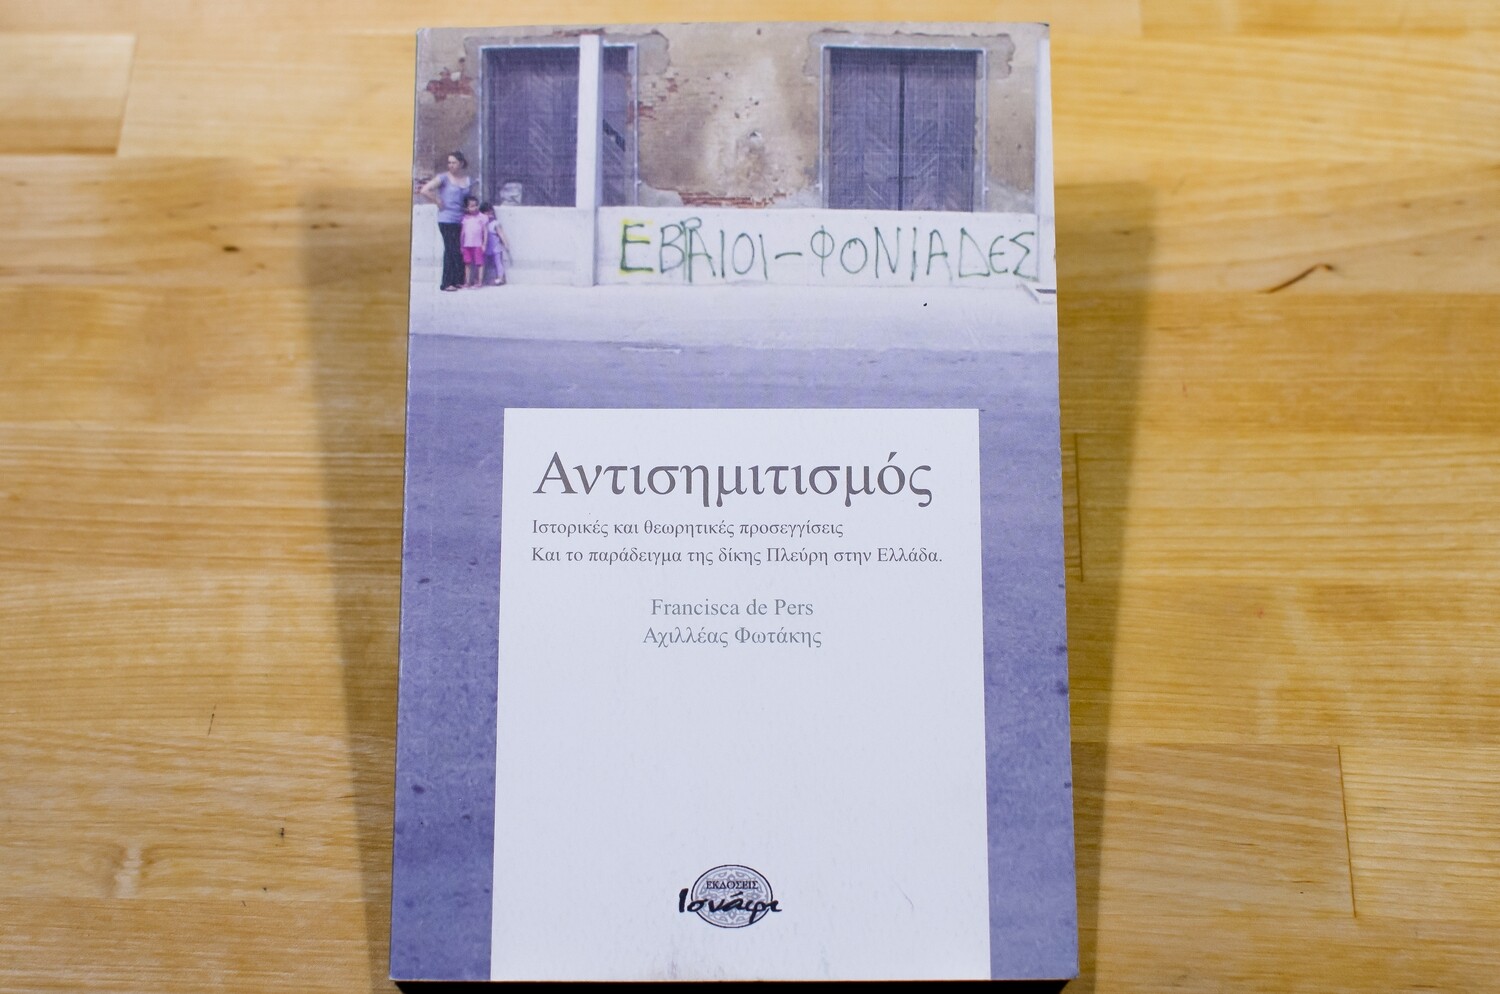 Αντισημιτισμός, Αχιλλέας Φωτάκης & Francisca De Pers, Εκδόσεις Ισνάφι, 2014